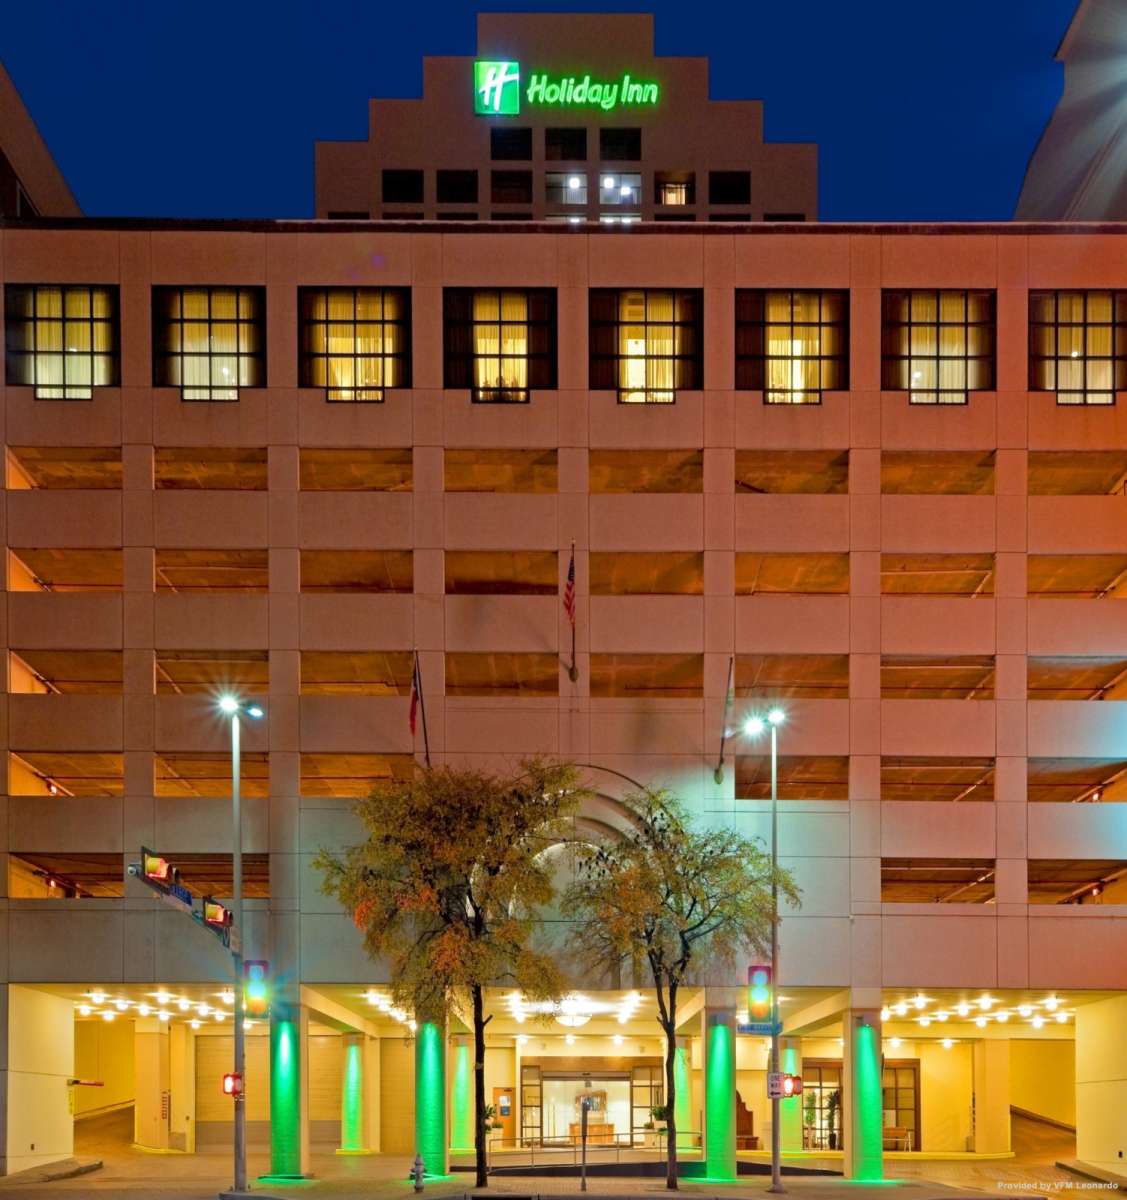 Holiday Inn SAN ANTONIO RIVERWALK San Antonio Aussenansicht 3 138241 600x600@2x 